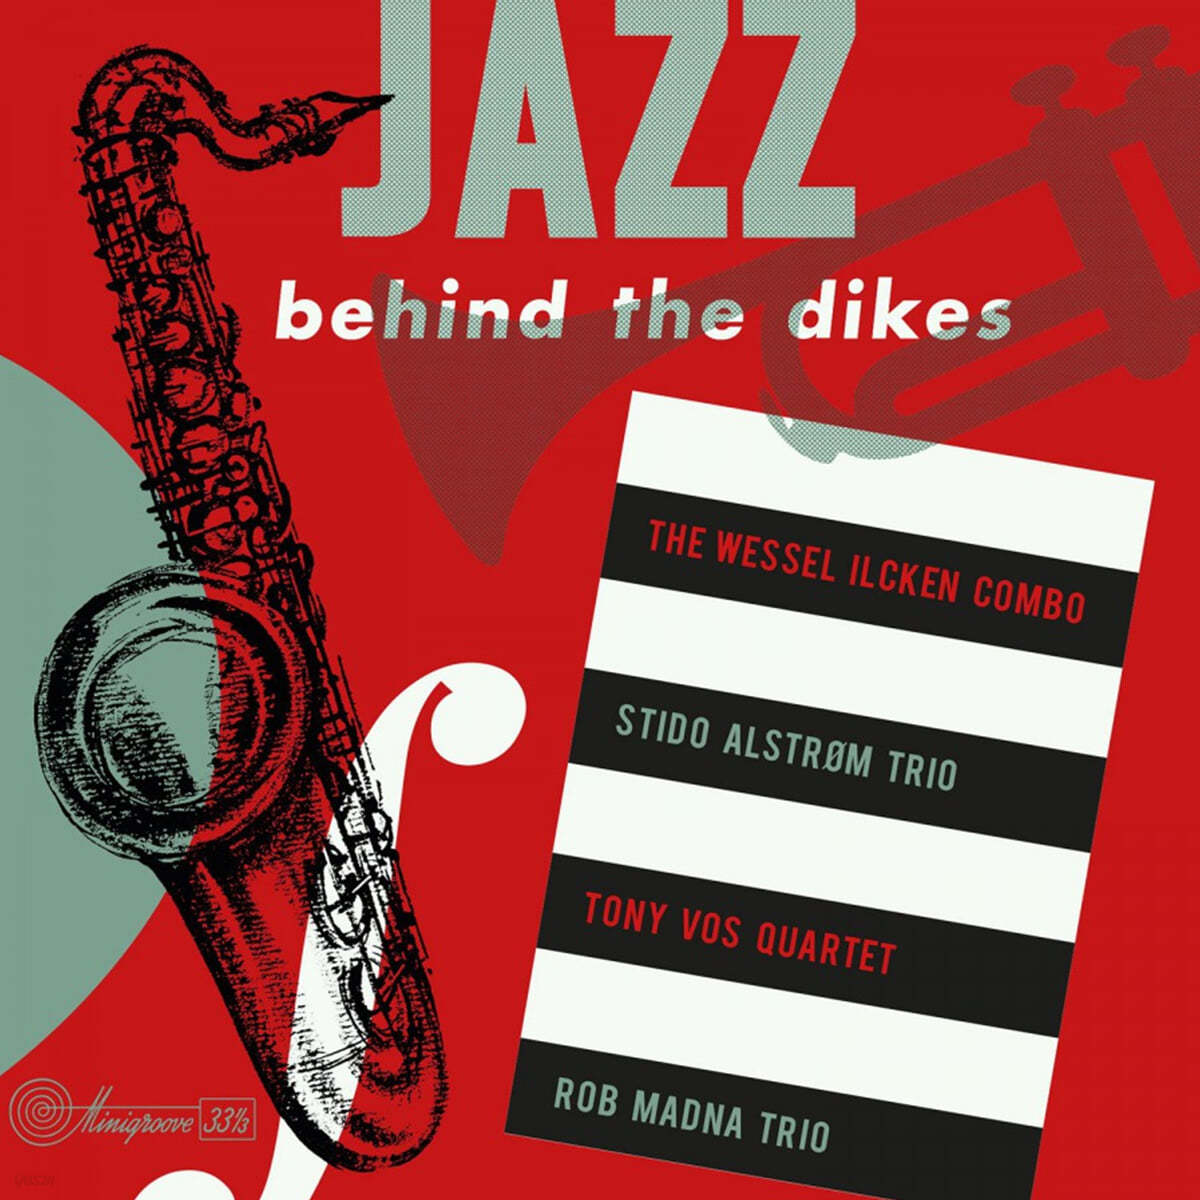 네덜란드 재즈 뮤지션들이 연주한 컴필레이션 앨범 1집 (Jazz Behind the Dikes Vol.1) [레드 컬러 LP] 